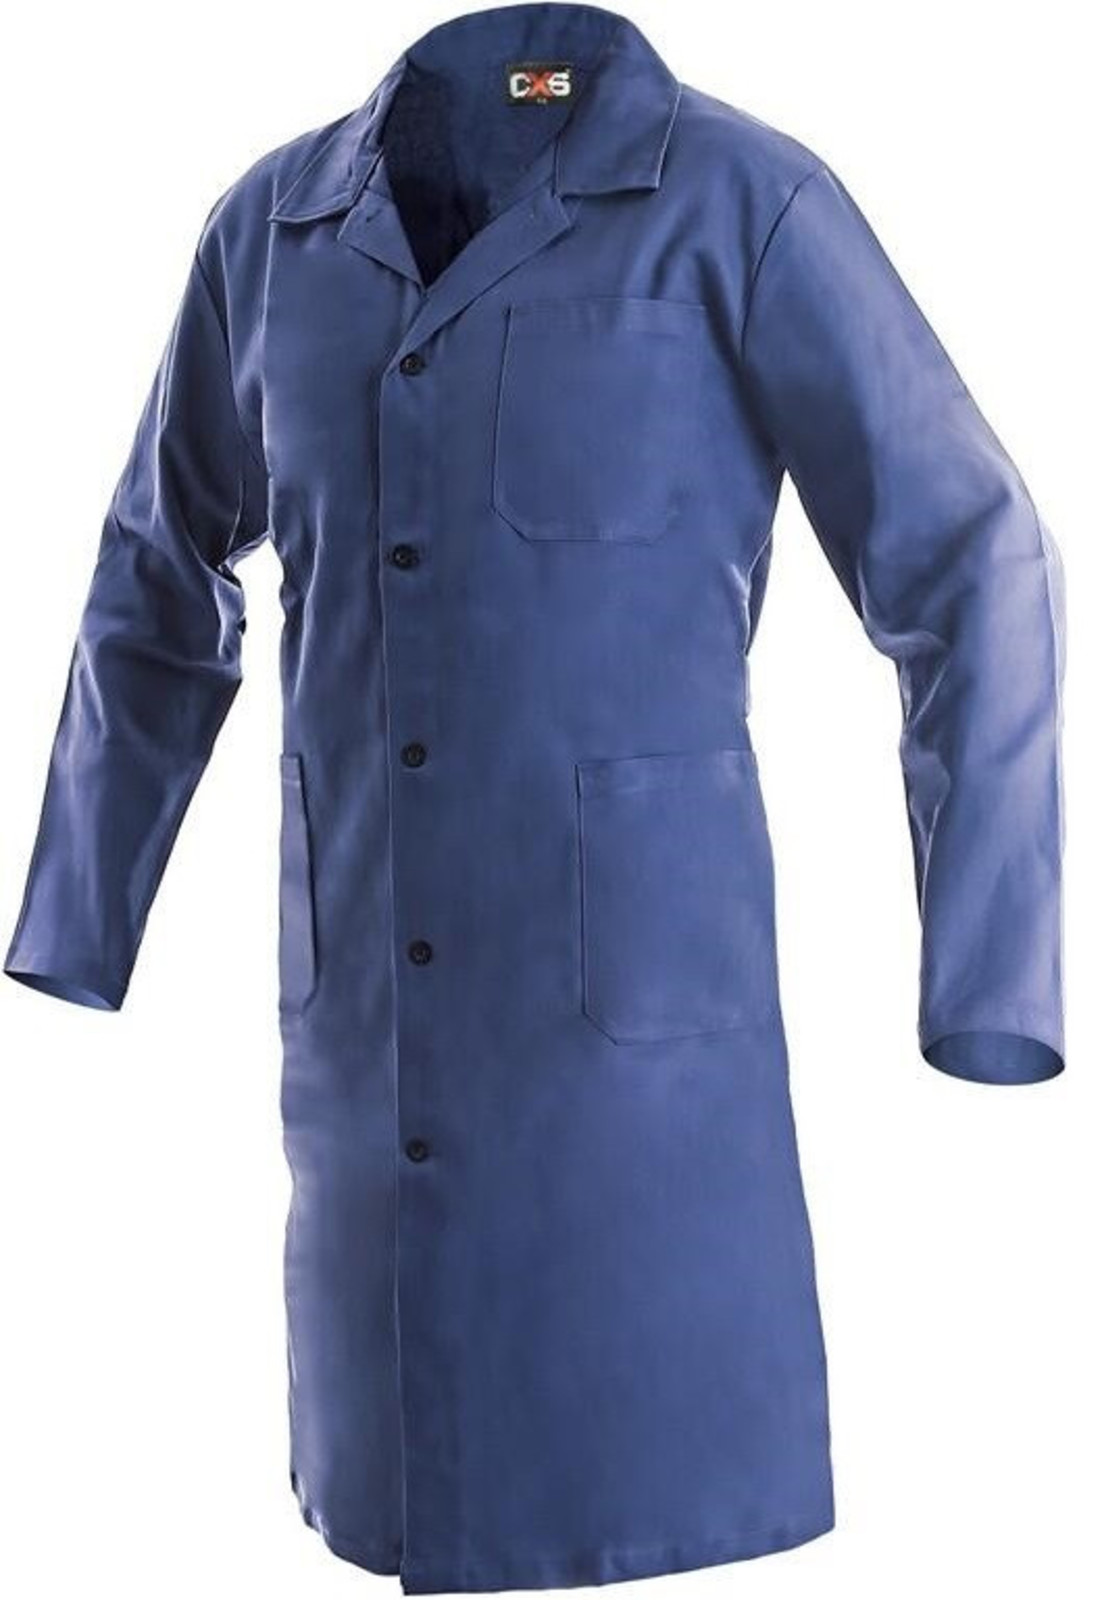 Pánsky pracovný plášť CXS Klasik Venca - veľkosť: 52, farba: modrá